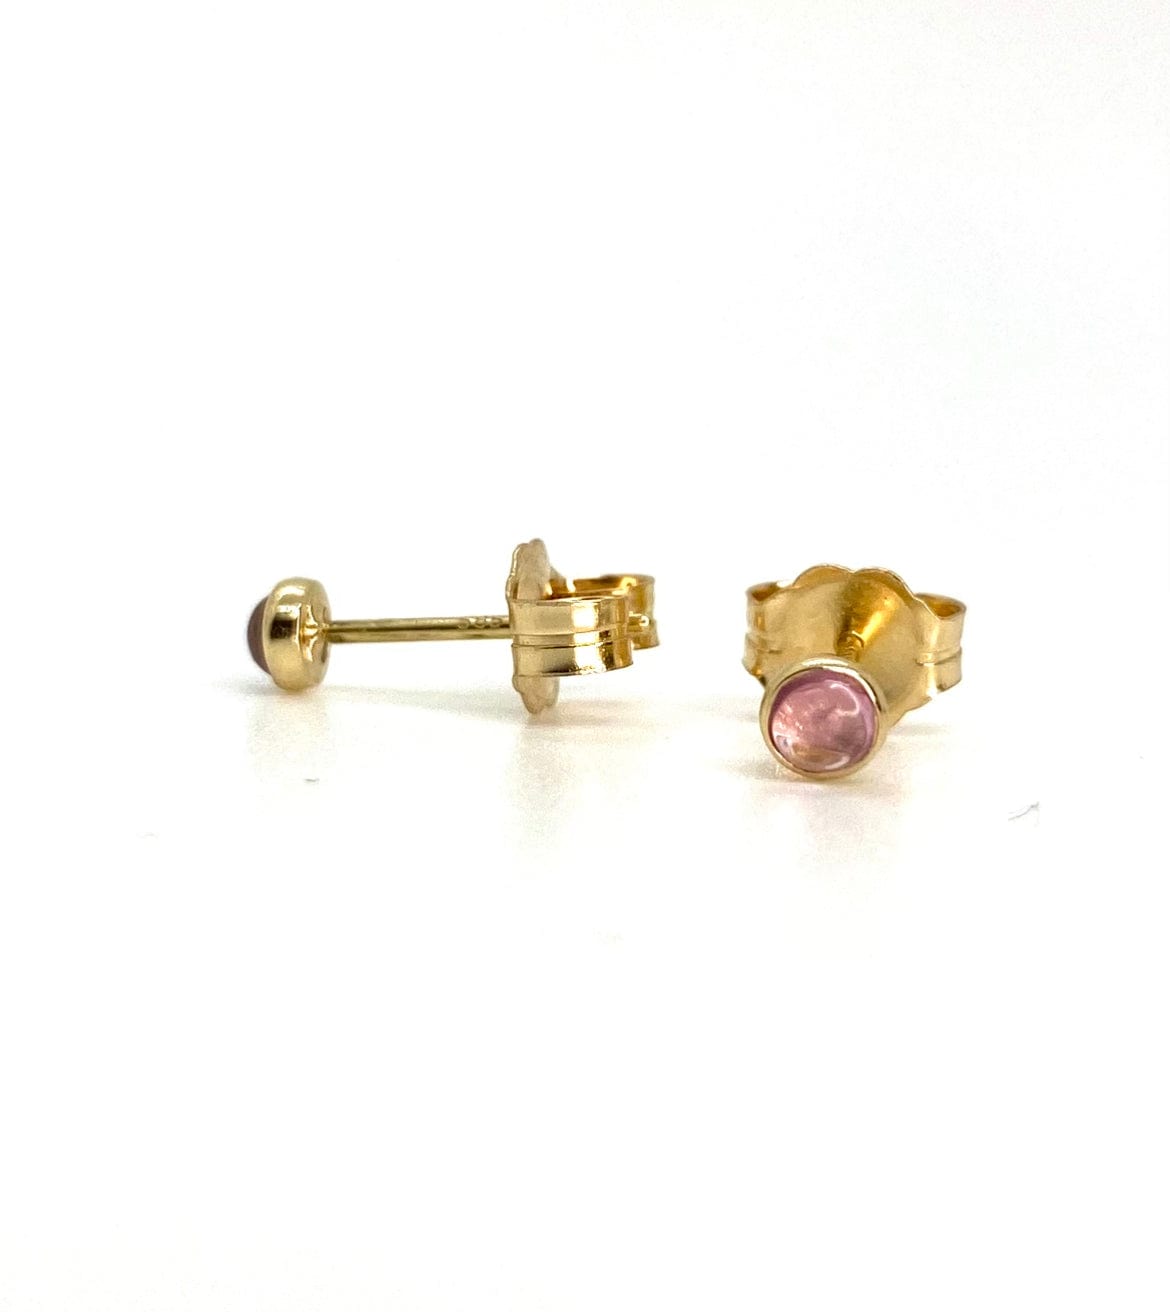 Sapphire 'Jelly Bean' Stud Earrings -14k Gold